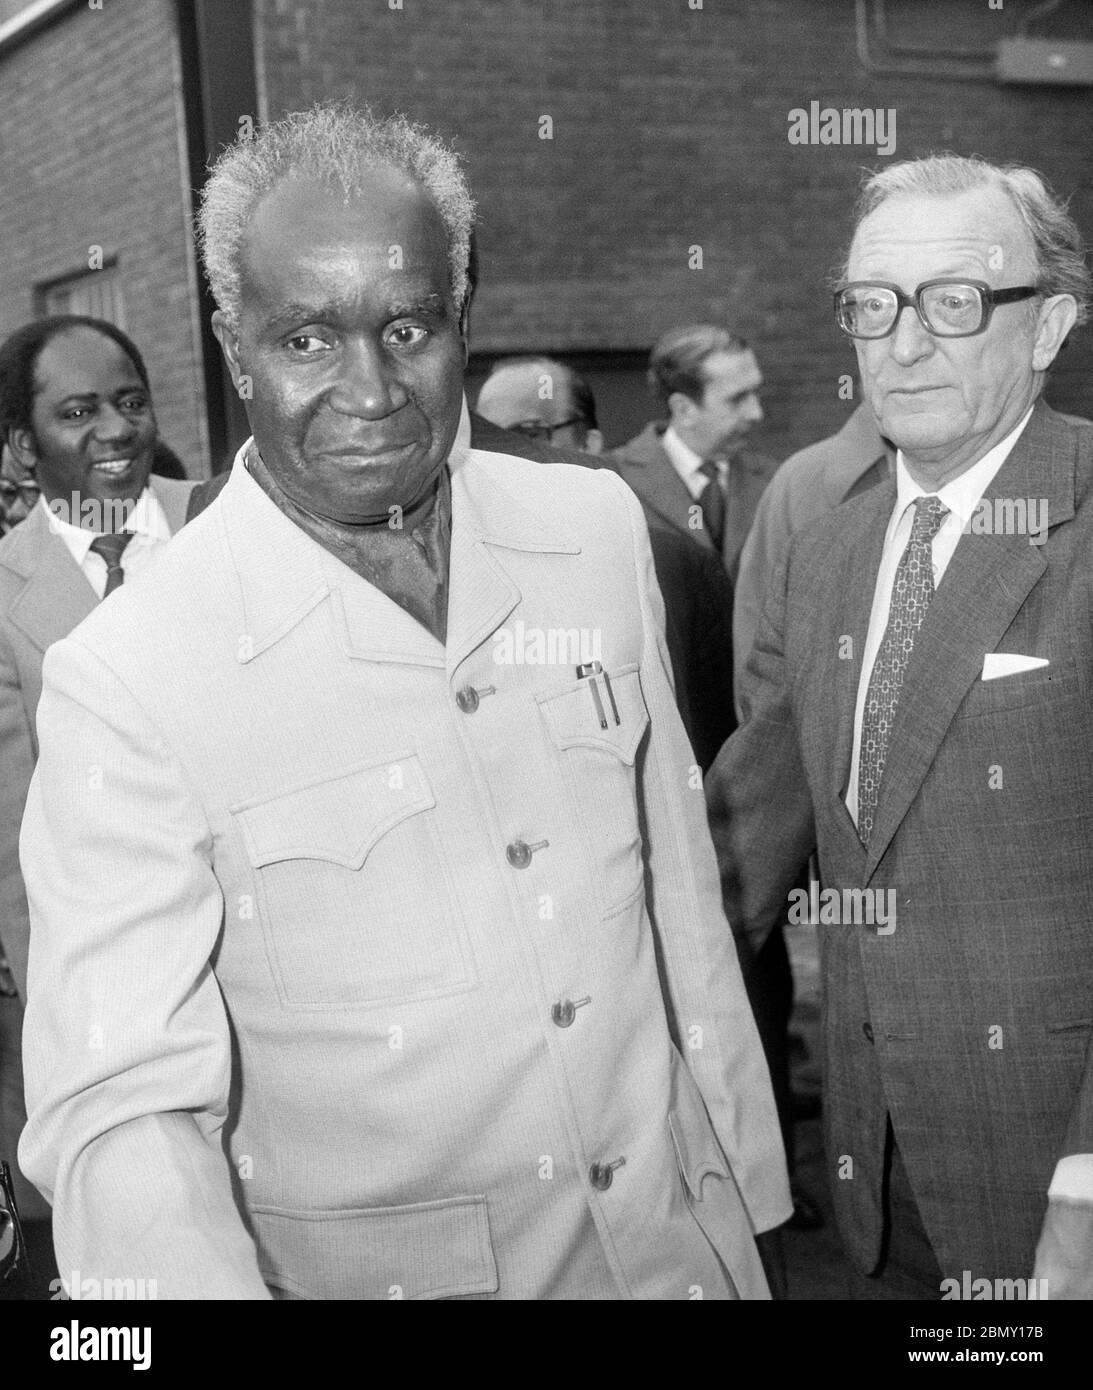 Le président Kaunda de Zambie arrivant à l'aéroport de Londres Heathrow en novembre 1979 a rencontré le secrétaire britannique aux Affaires étrangères Lord Carrington. Banque D'Images